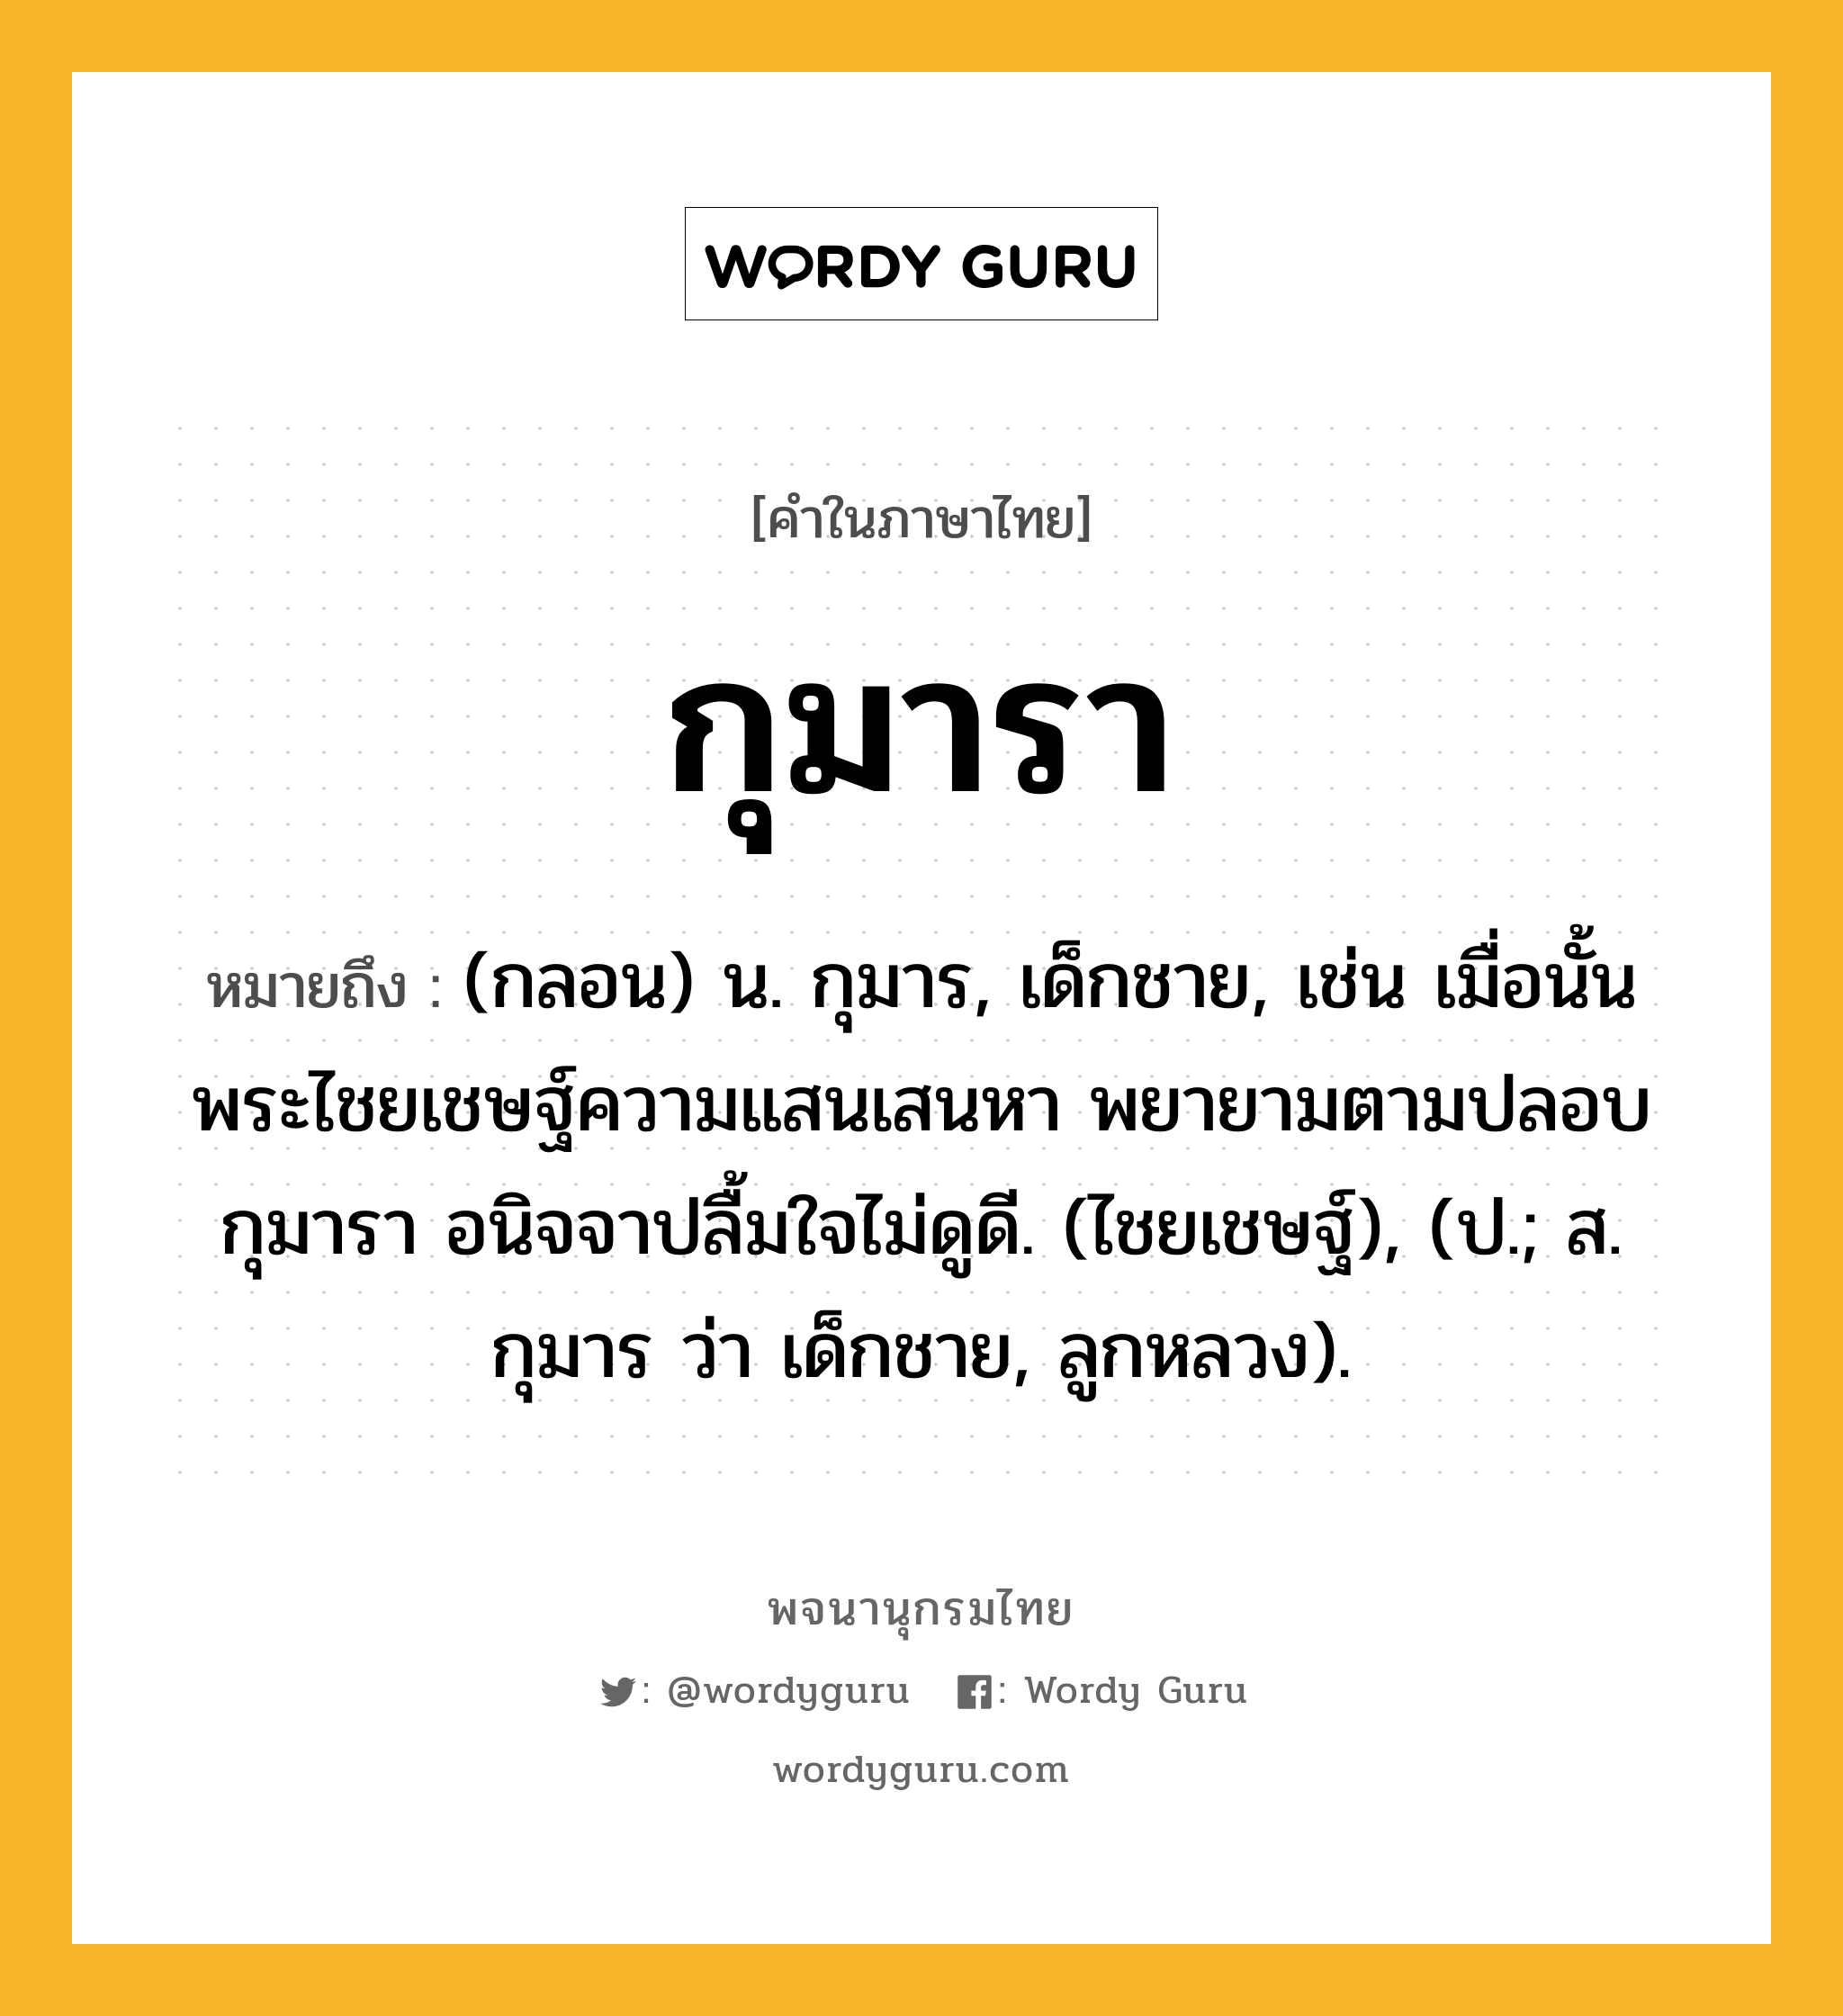 กุมารา ความหมาย หมายถึงอะไร?, คำในภาษาไทย กุมารา หมายถึง (กลอน) น. กุมาร, เด็กชาย, เช่น เมื่อนั้น พระไชยเชษฐ์ความแสนเสนหา พยายามตามปลอบกุมารา อนิจจาปลื้มใจไม่ดูดี. (ไชยเชษฐ์), (ป.; ส. กุมาร ว่า เด็กชาย, ลูกหลวง).